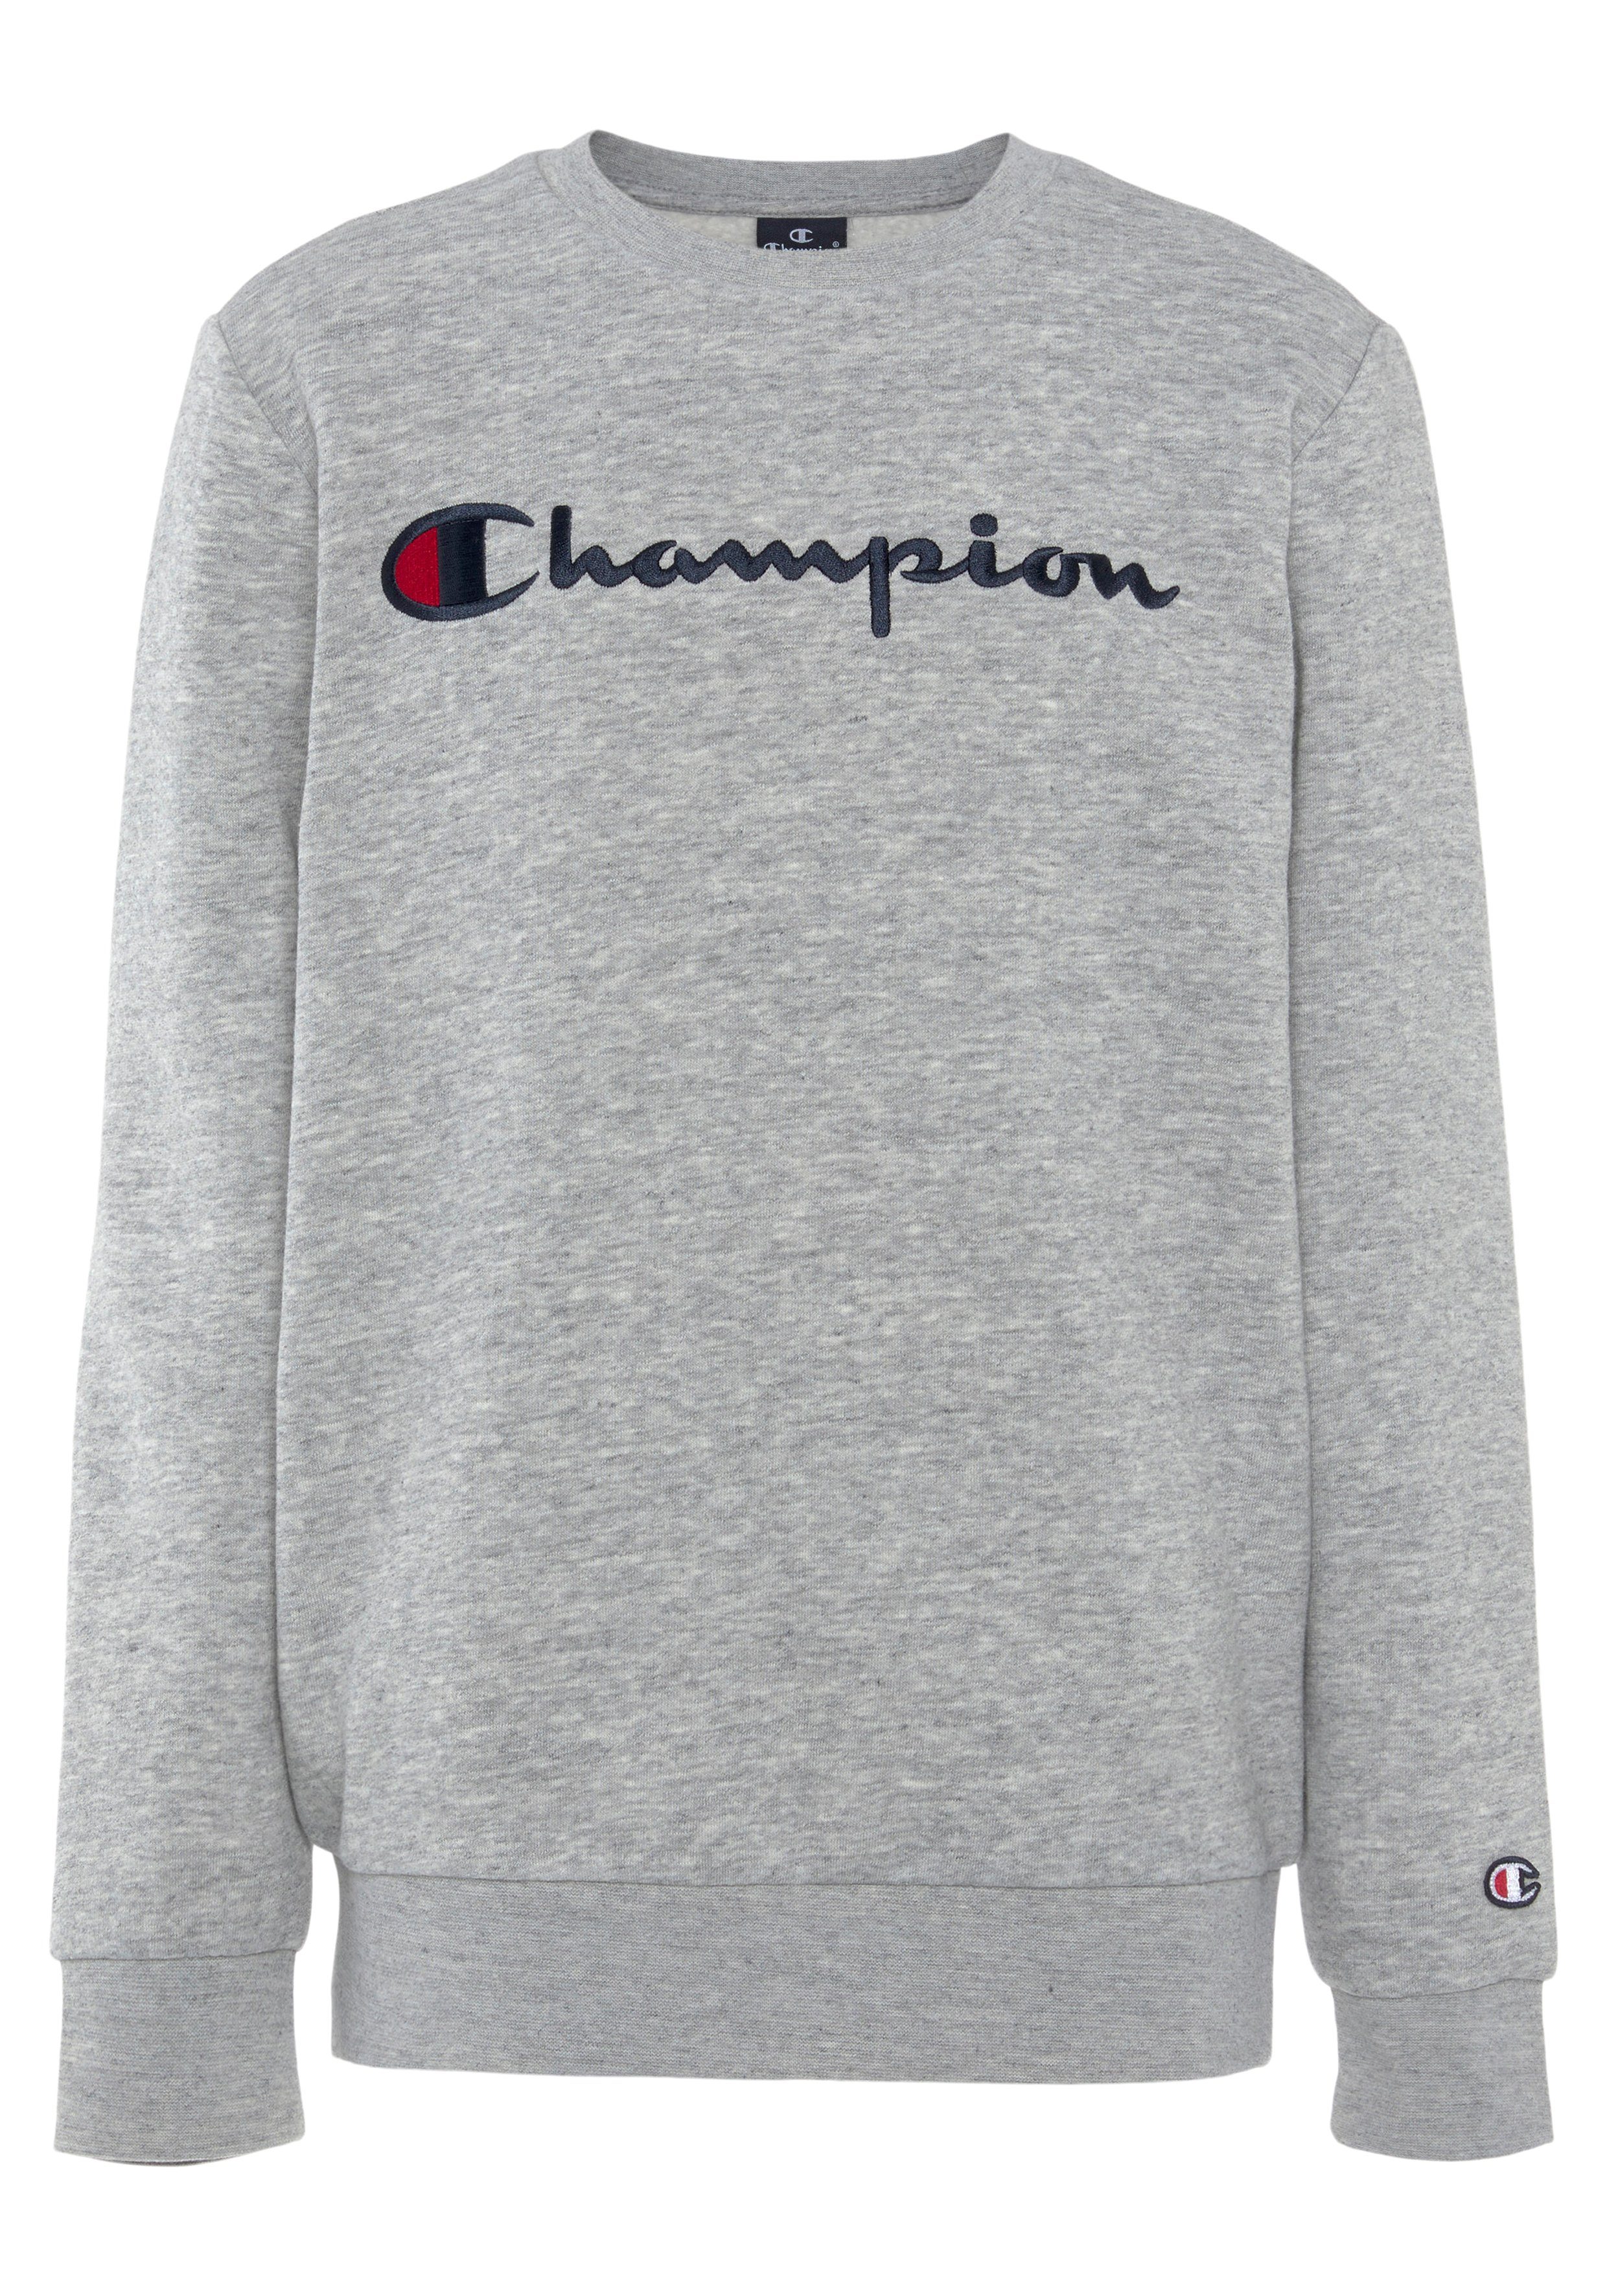 Informationen zu Rabatten im Versandhandel Champion Sweatshirt large Kinder Classic Sweatshirt - Crewneck hellgrau Logo mel für